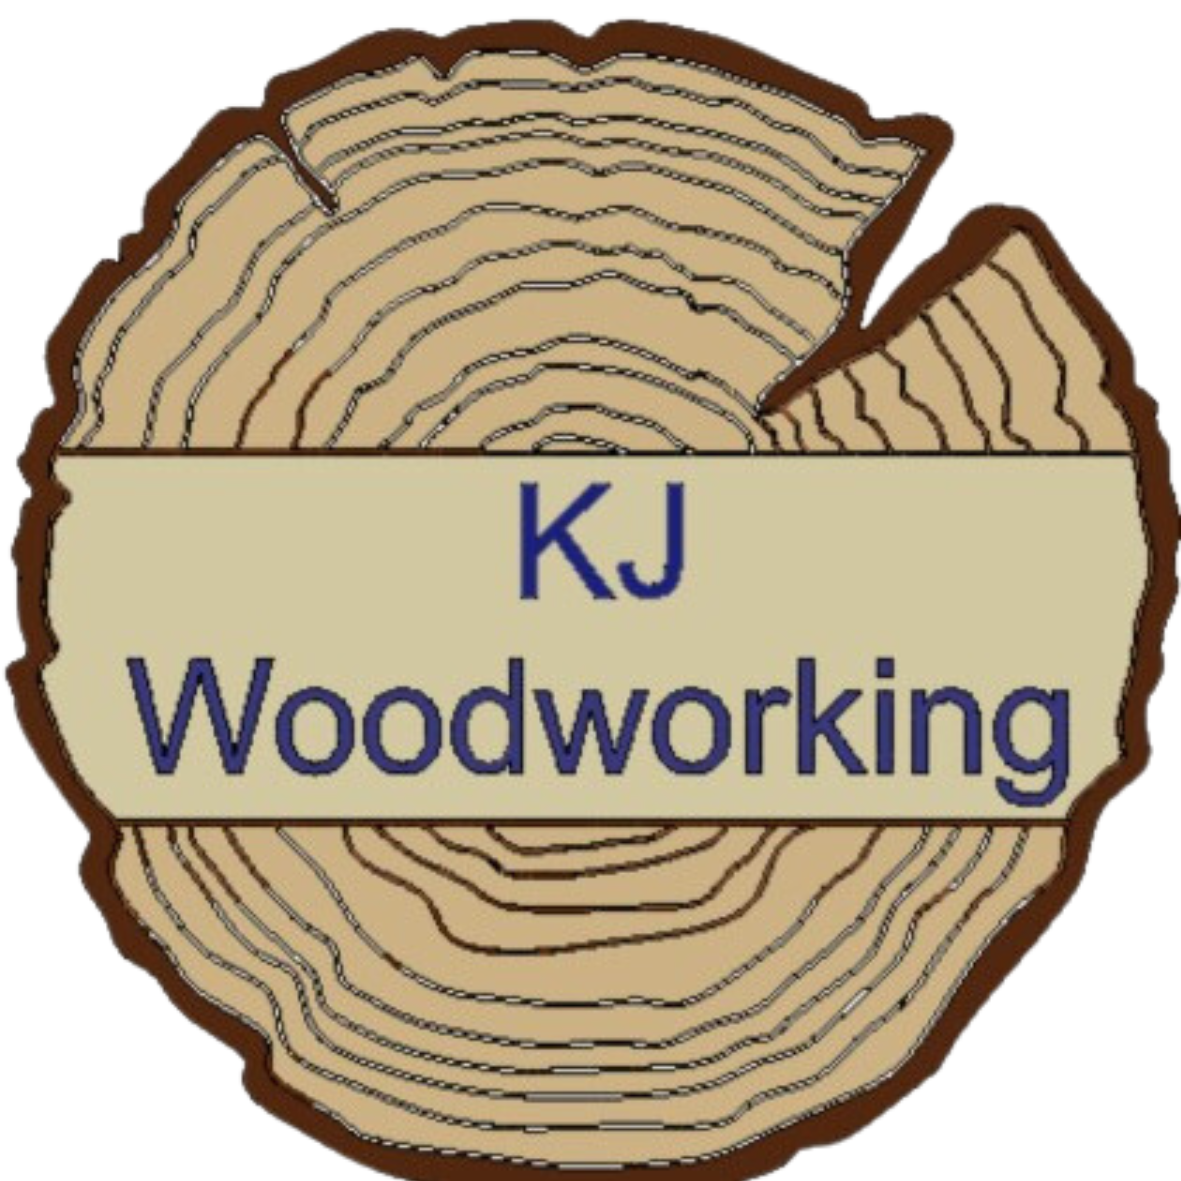                        KJ Woodworking